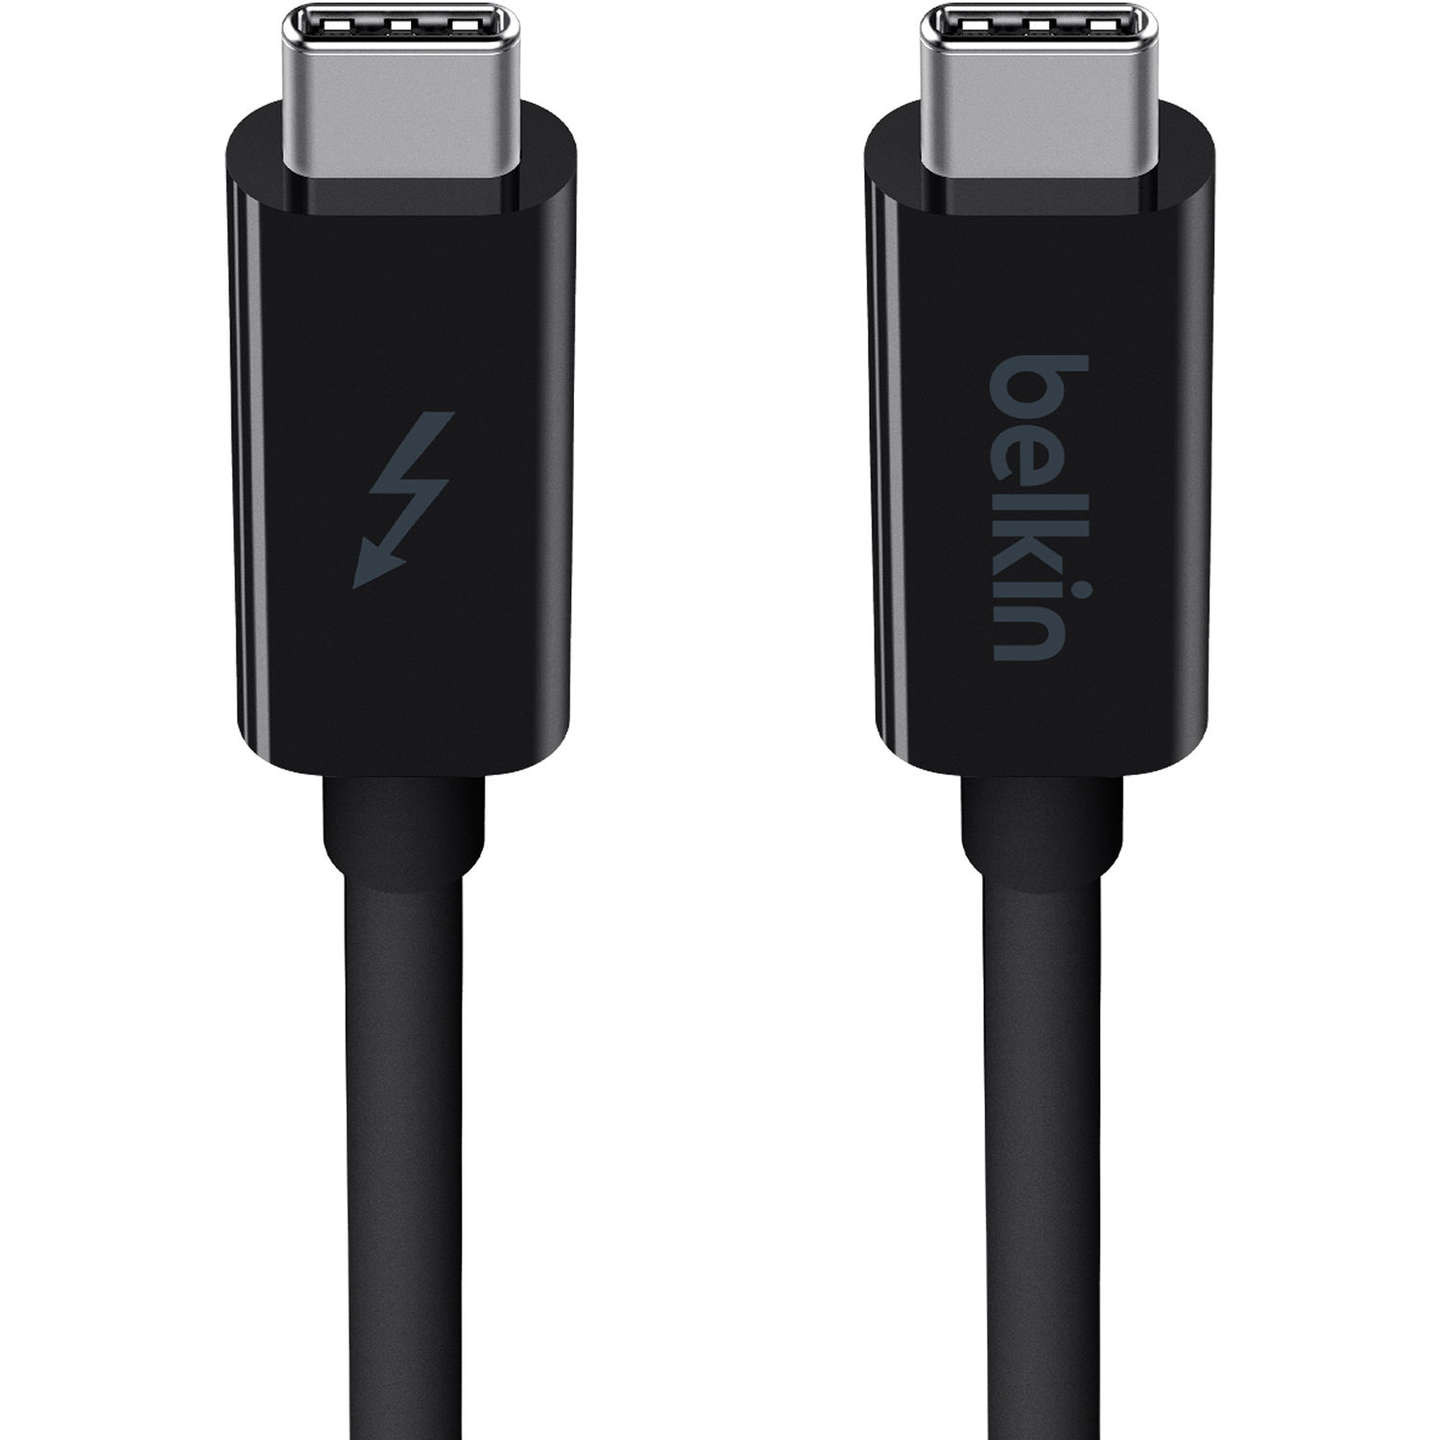 Belkin kabel Thunderbolt 3 (USB-C) 2m černý - Zánovní!